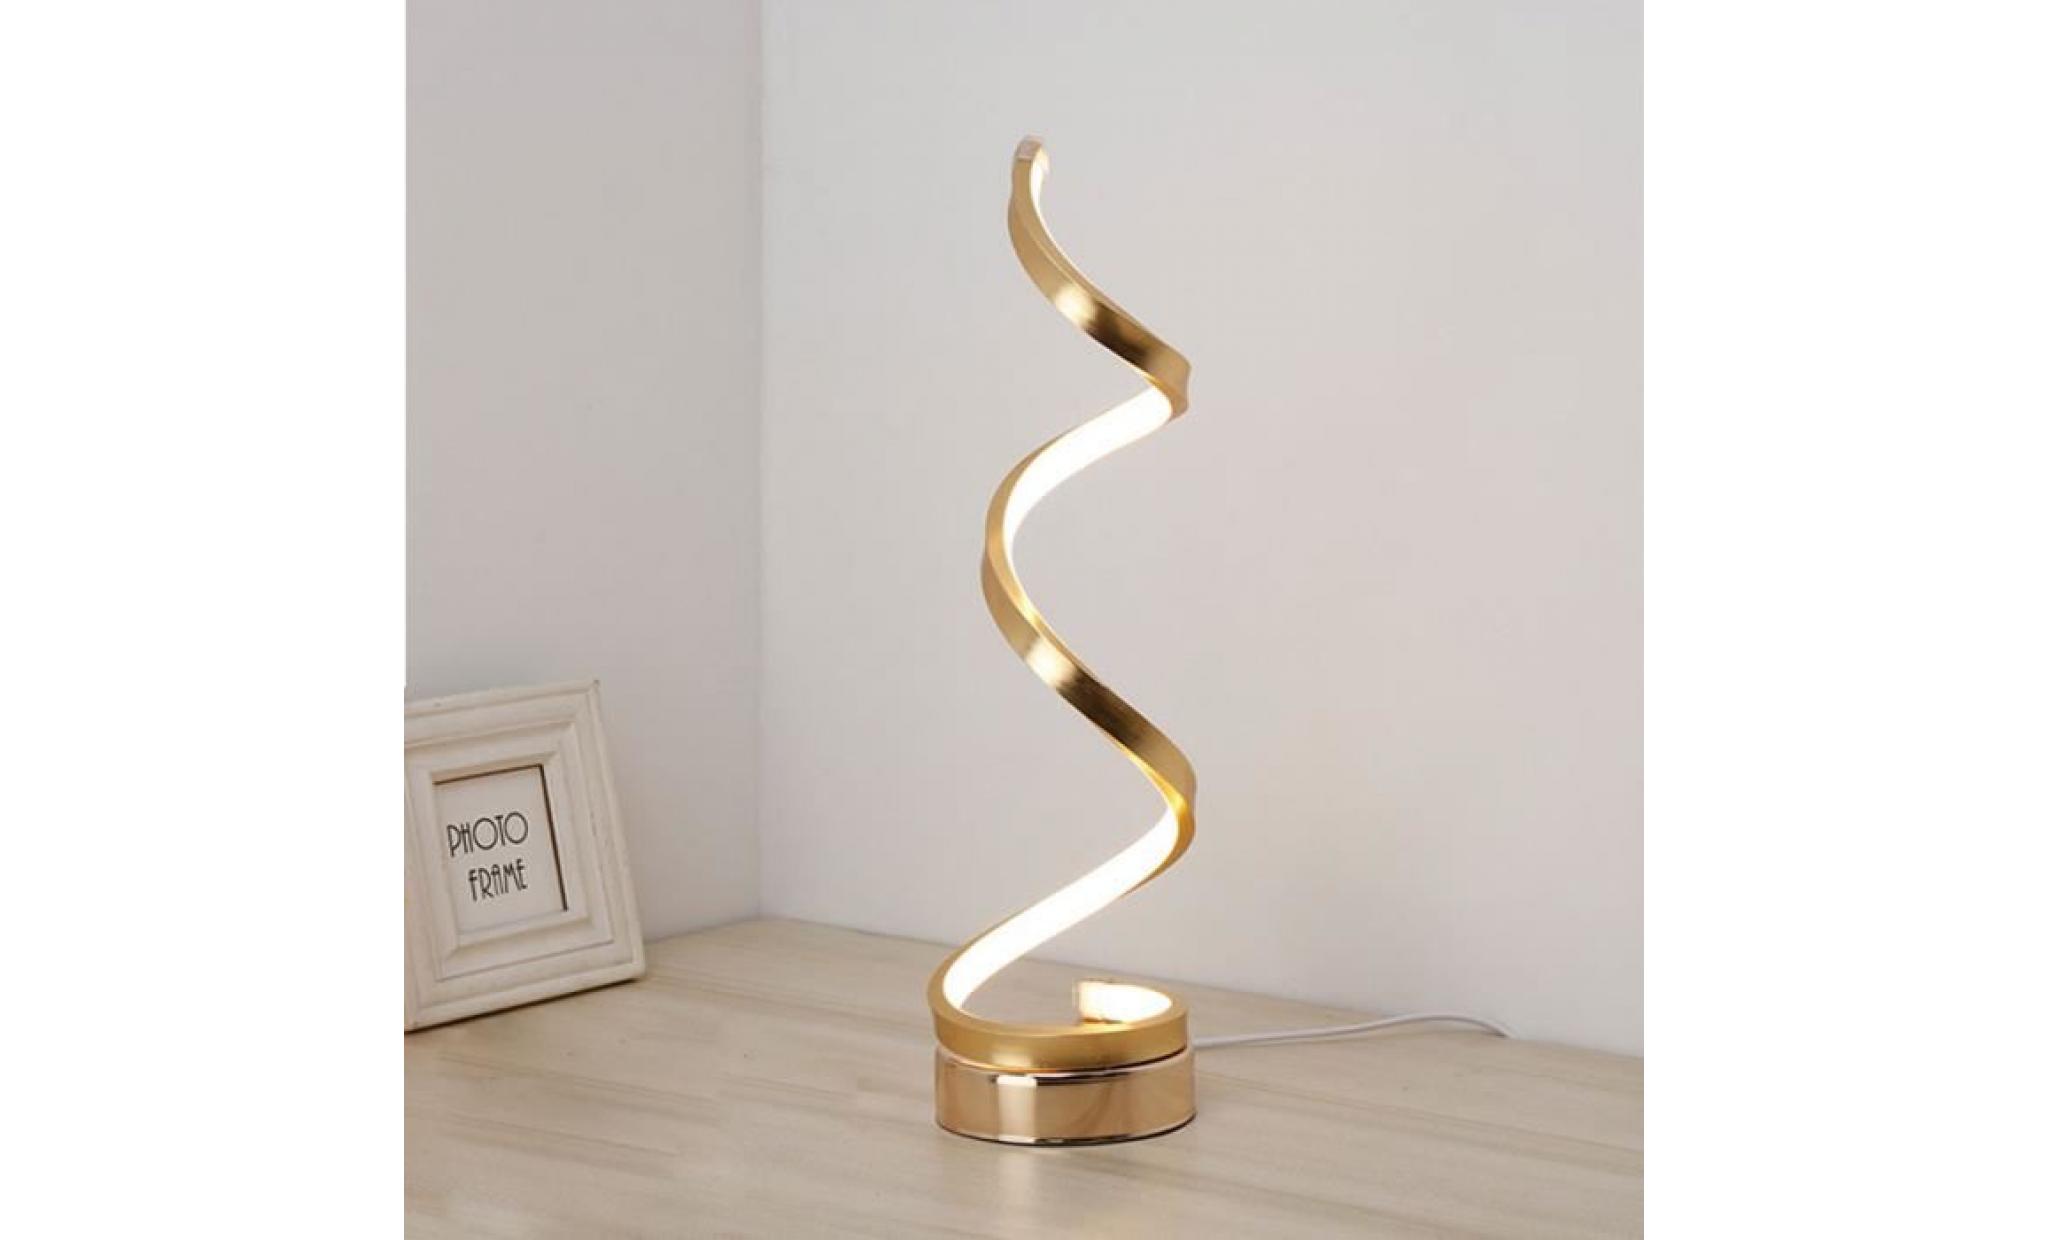 spirale led lampe de bureau 12w blanc chaud dimming incurvée acrylique lampe de table led design minimaliste creative pas cher